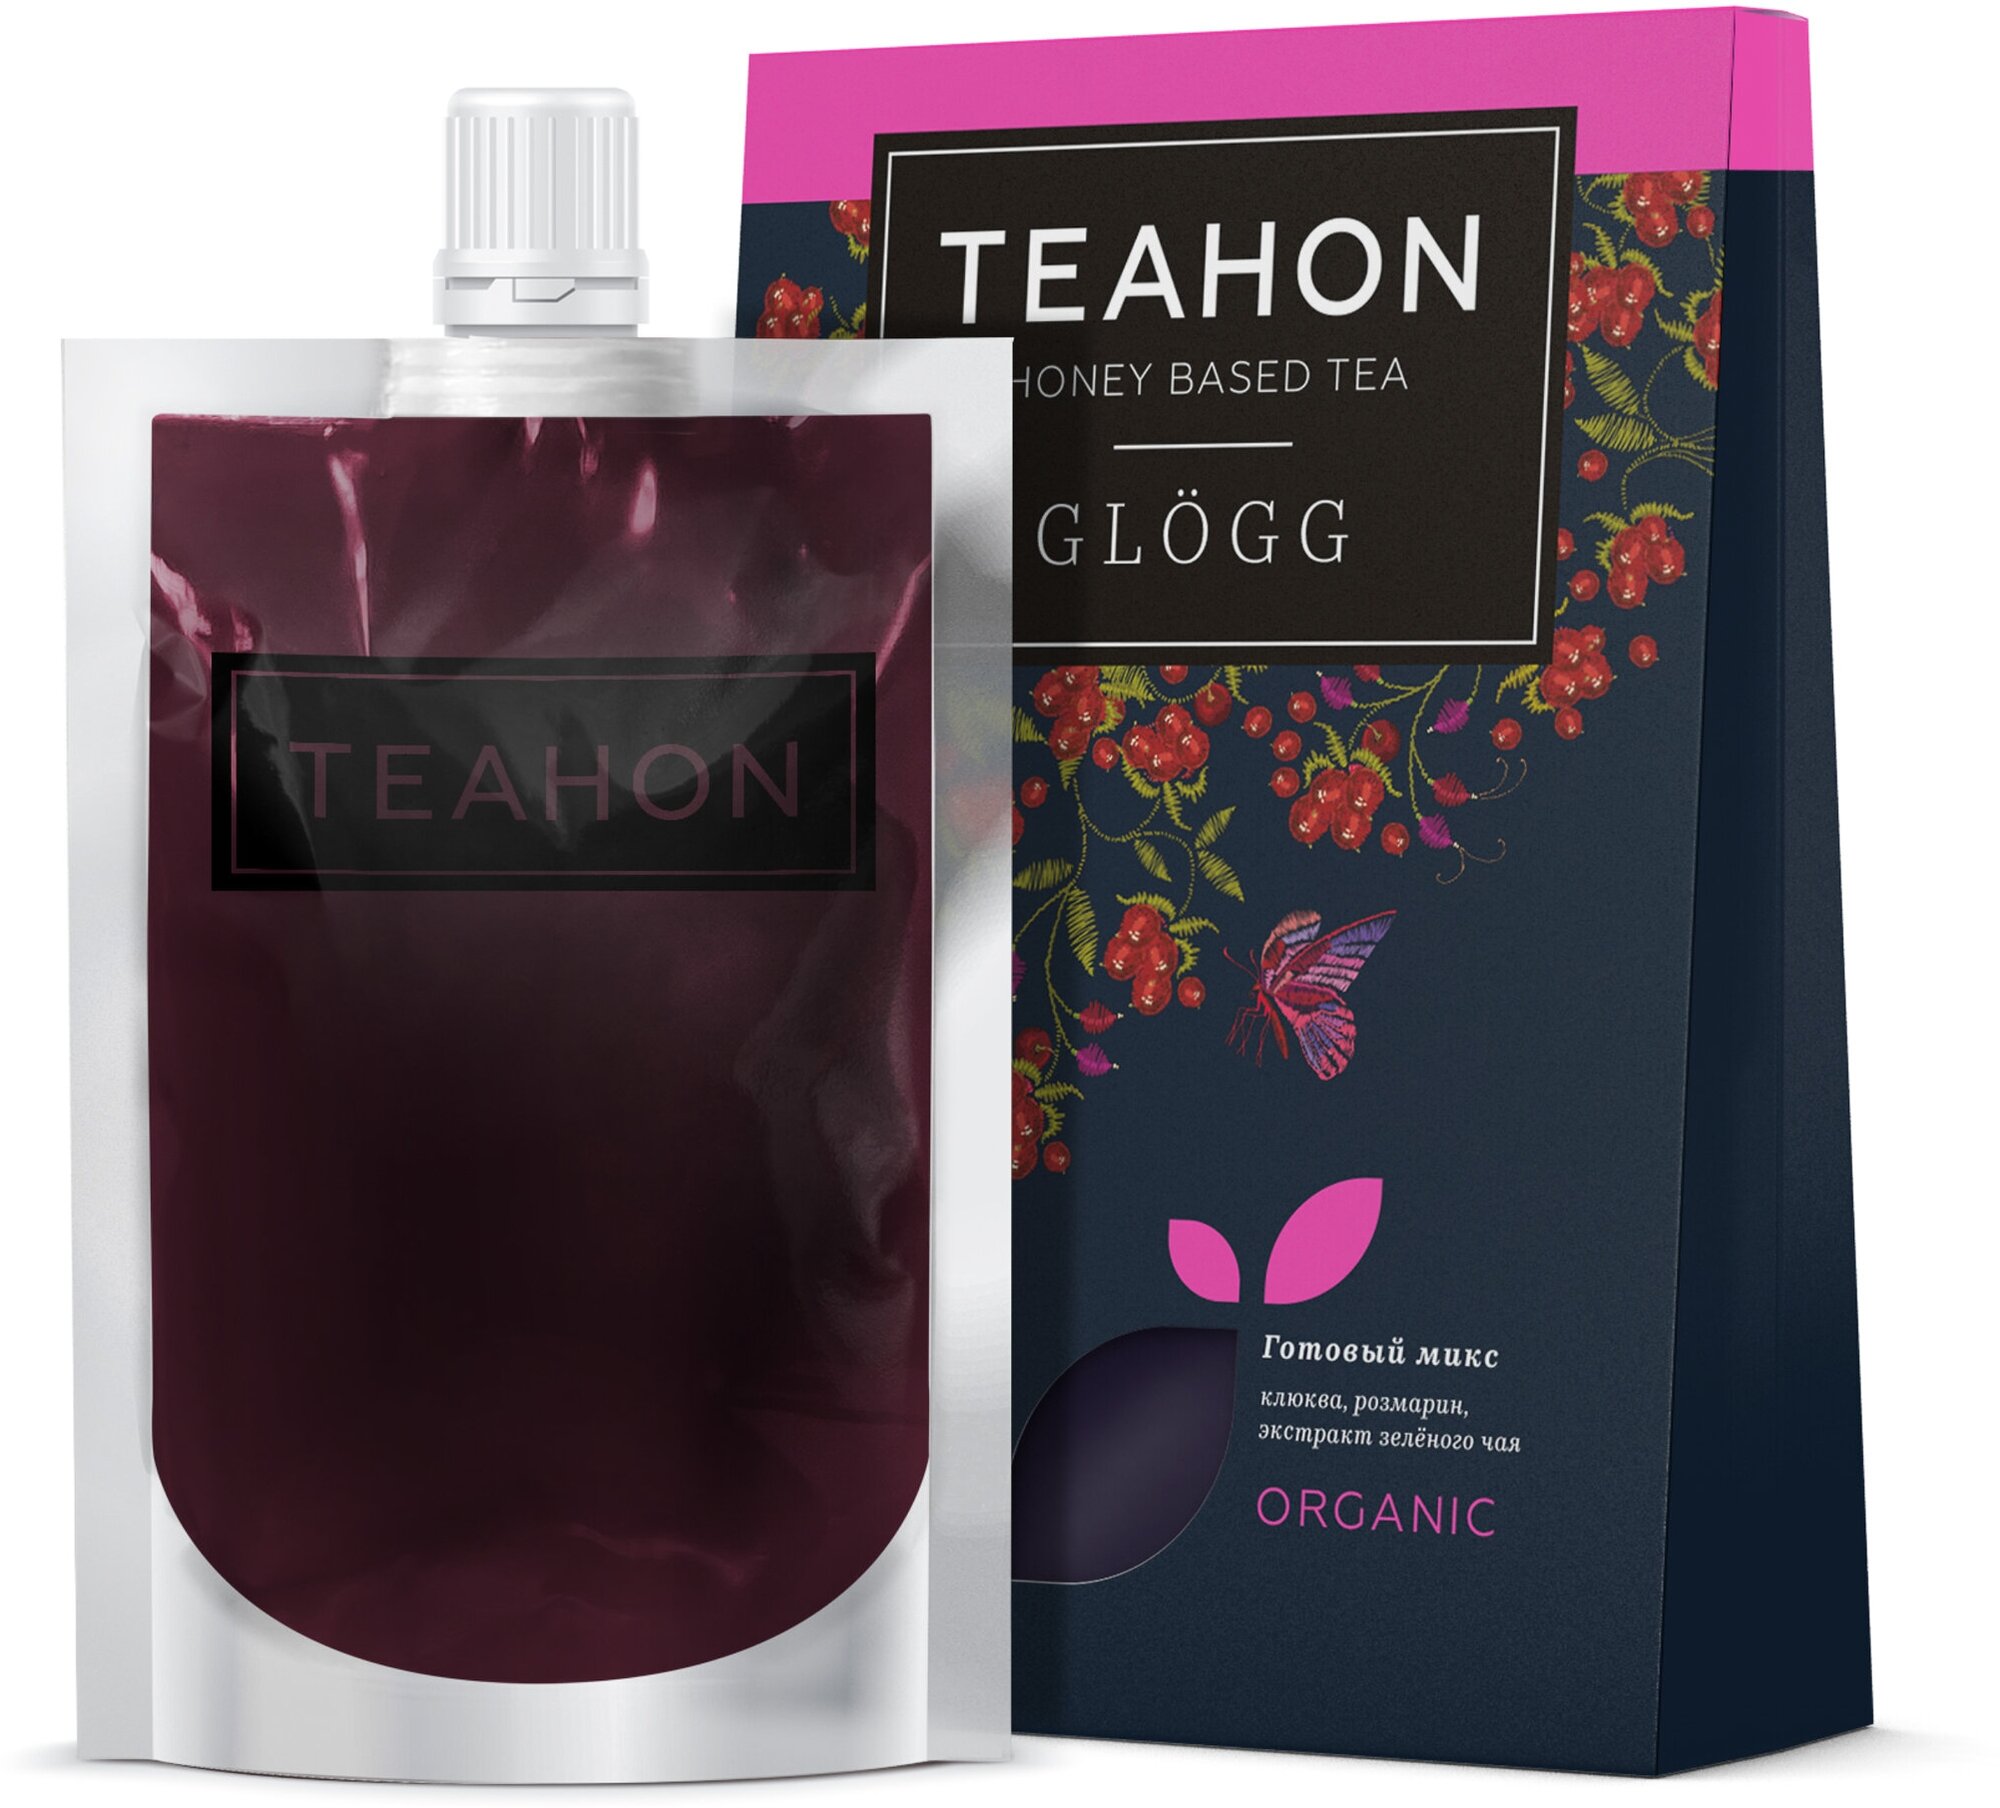 Глогг клюквенный, жидкий концентрат чайного напитка TEAHON, медоварус 170 мл